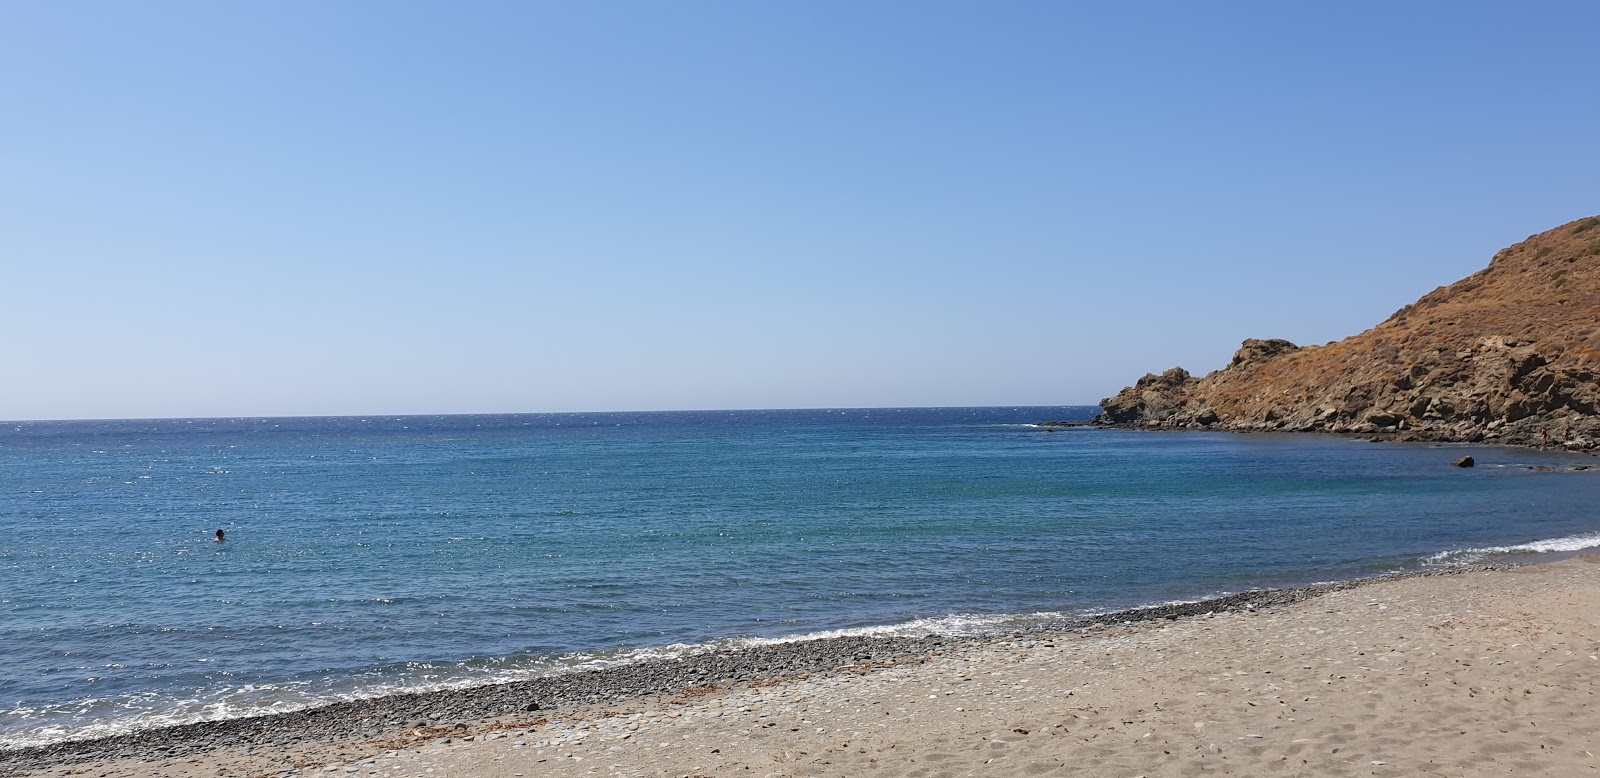 Foto von Zanakounta beach mit türkisfarbenes wasser Oberfläche